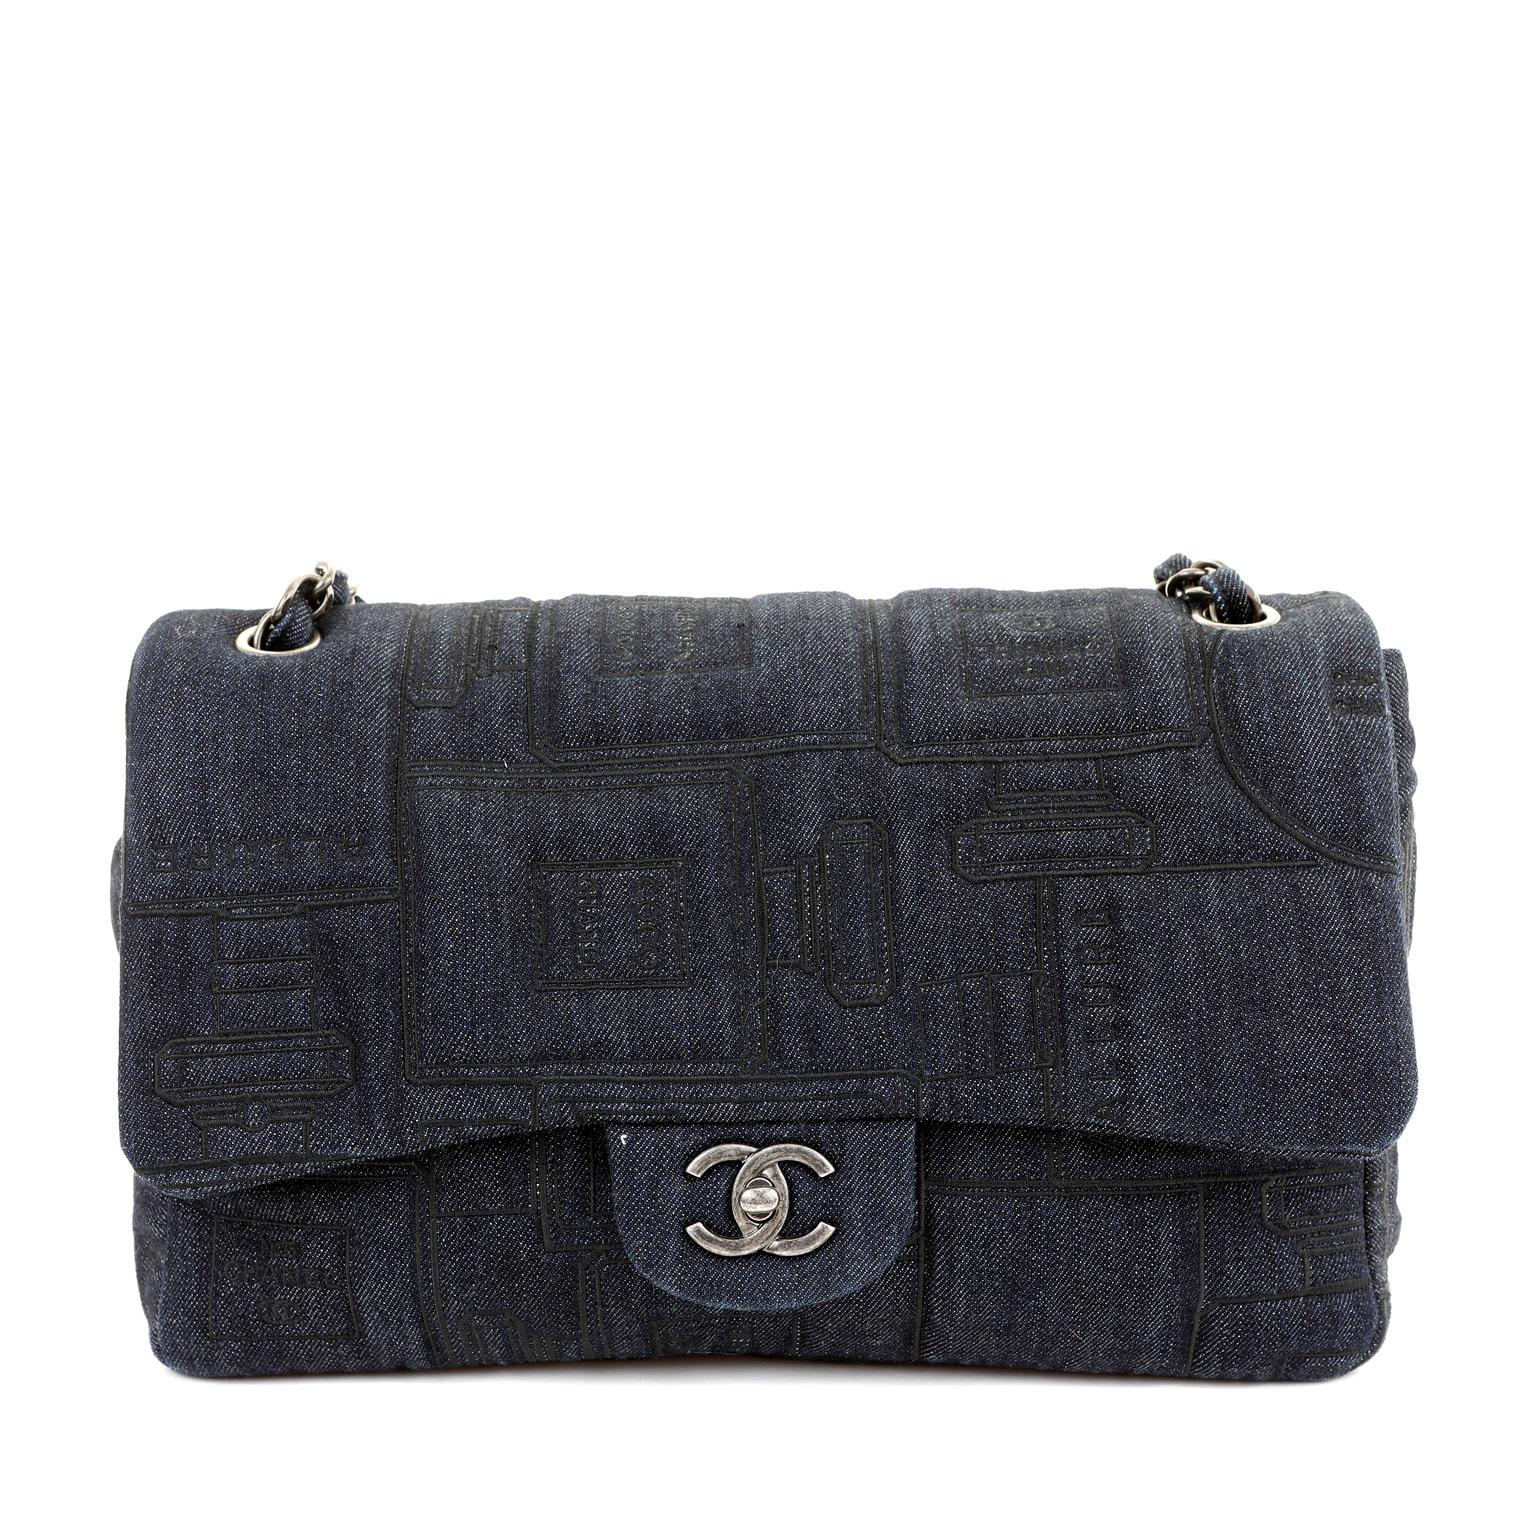 chanel blue jean purse